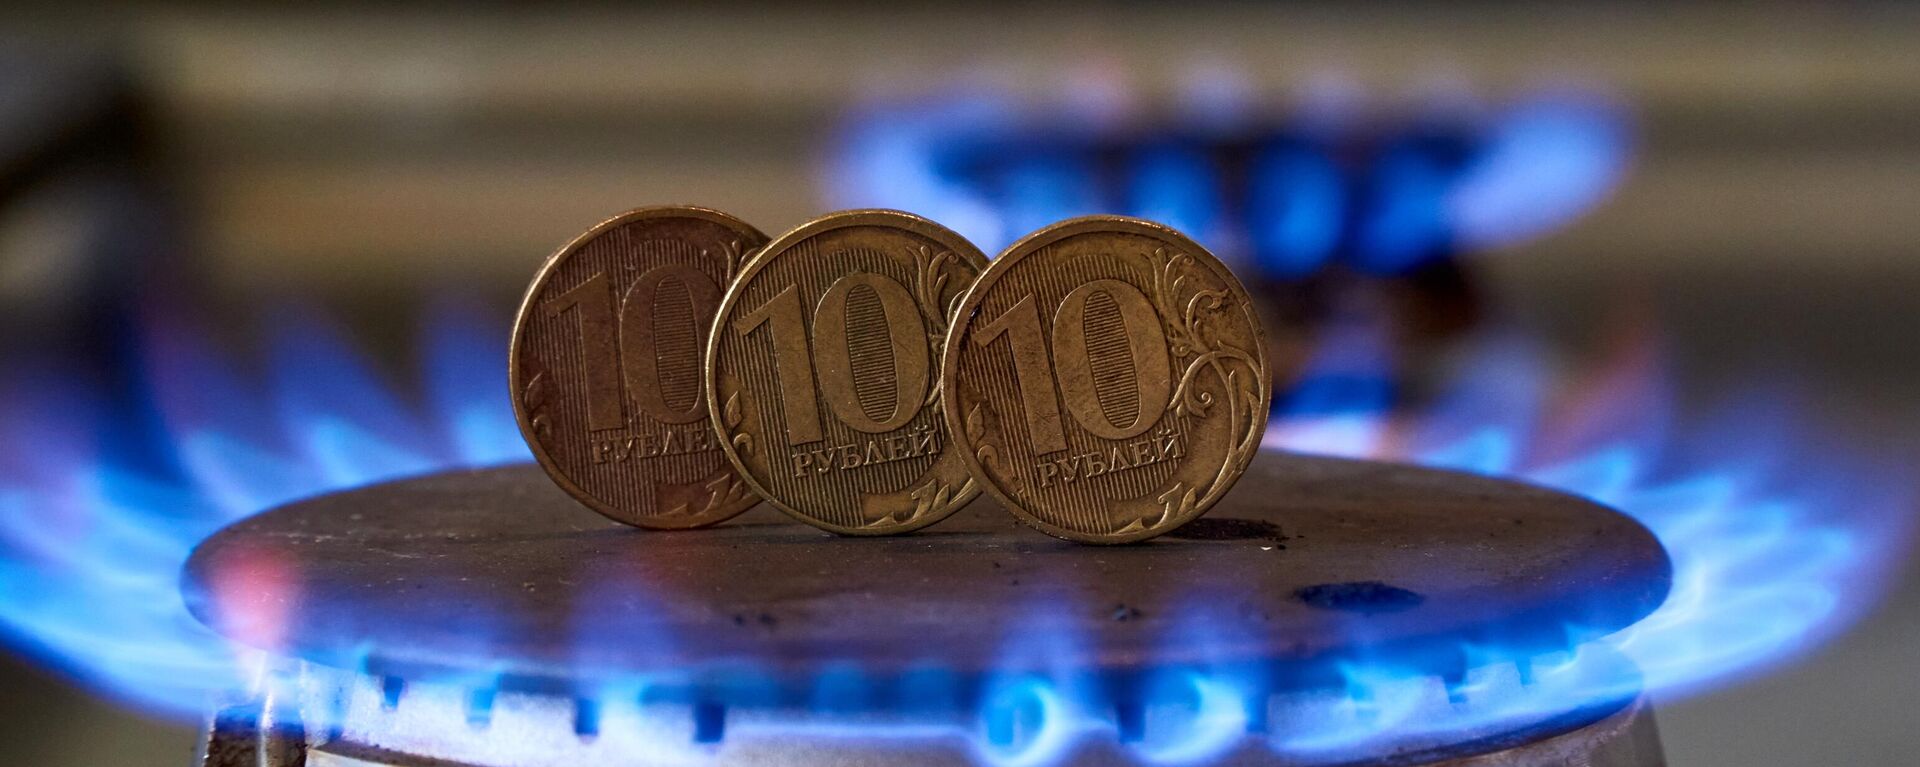 Монеты номиналам десять рублей на газовой плите - Sputnik Латвия, 1920, 14.04.2022